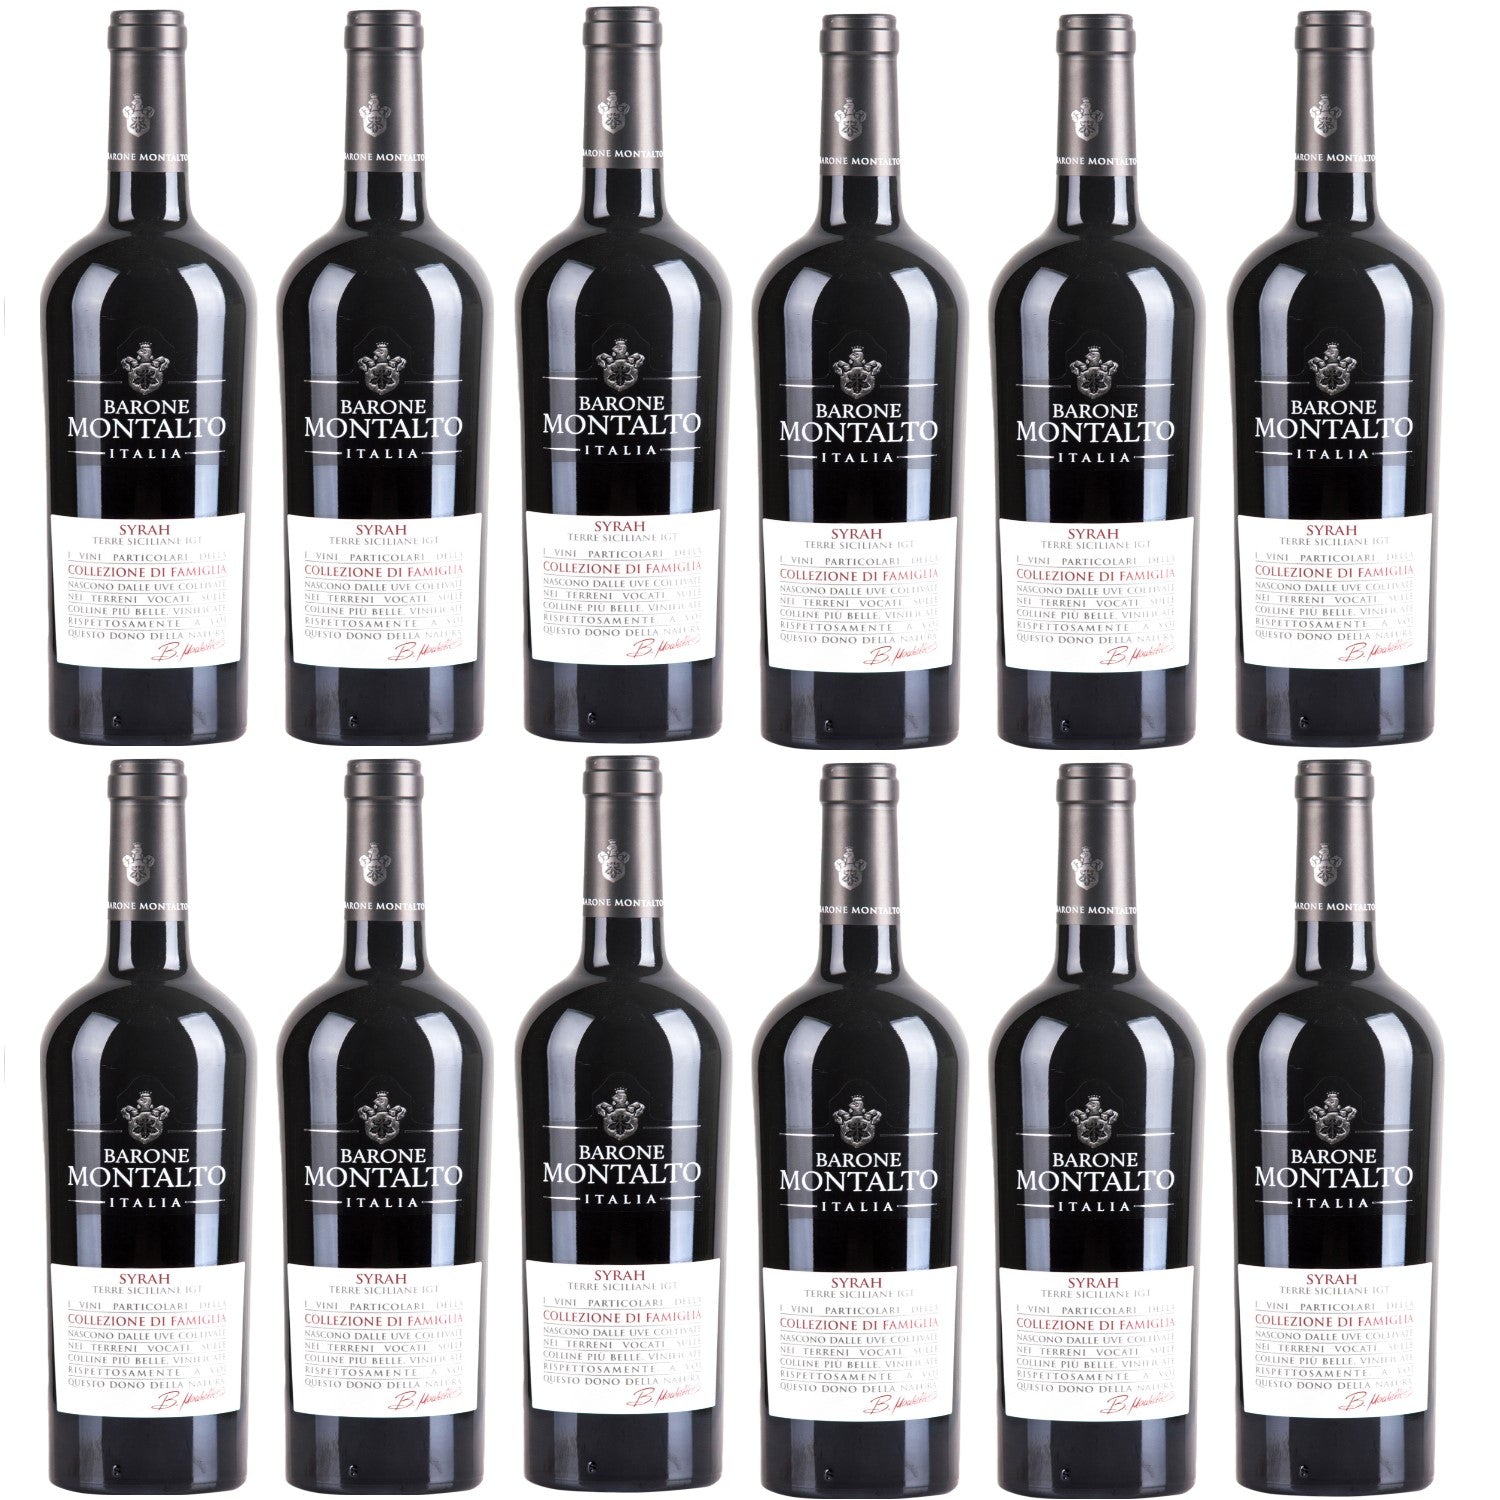 Barone Montalto Syrah Terre Siciliane IGT Rotwein Wein halbtrocken Italien (12 x 0.75l) - Versanel -